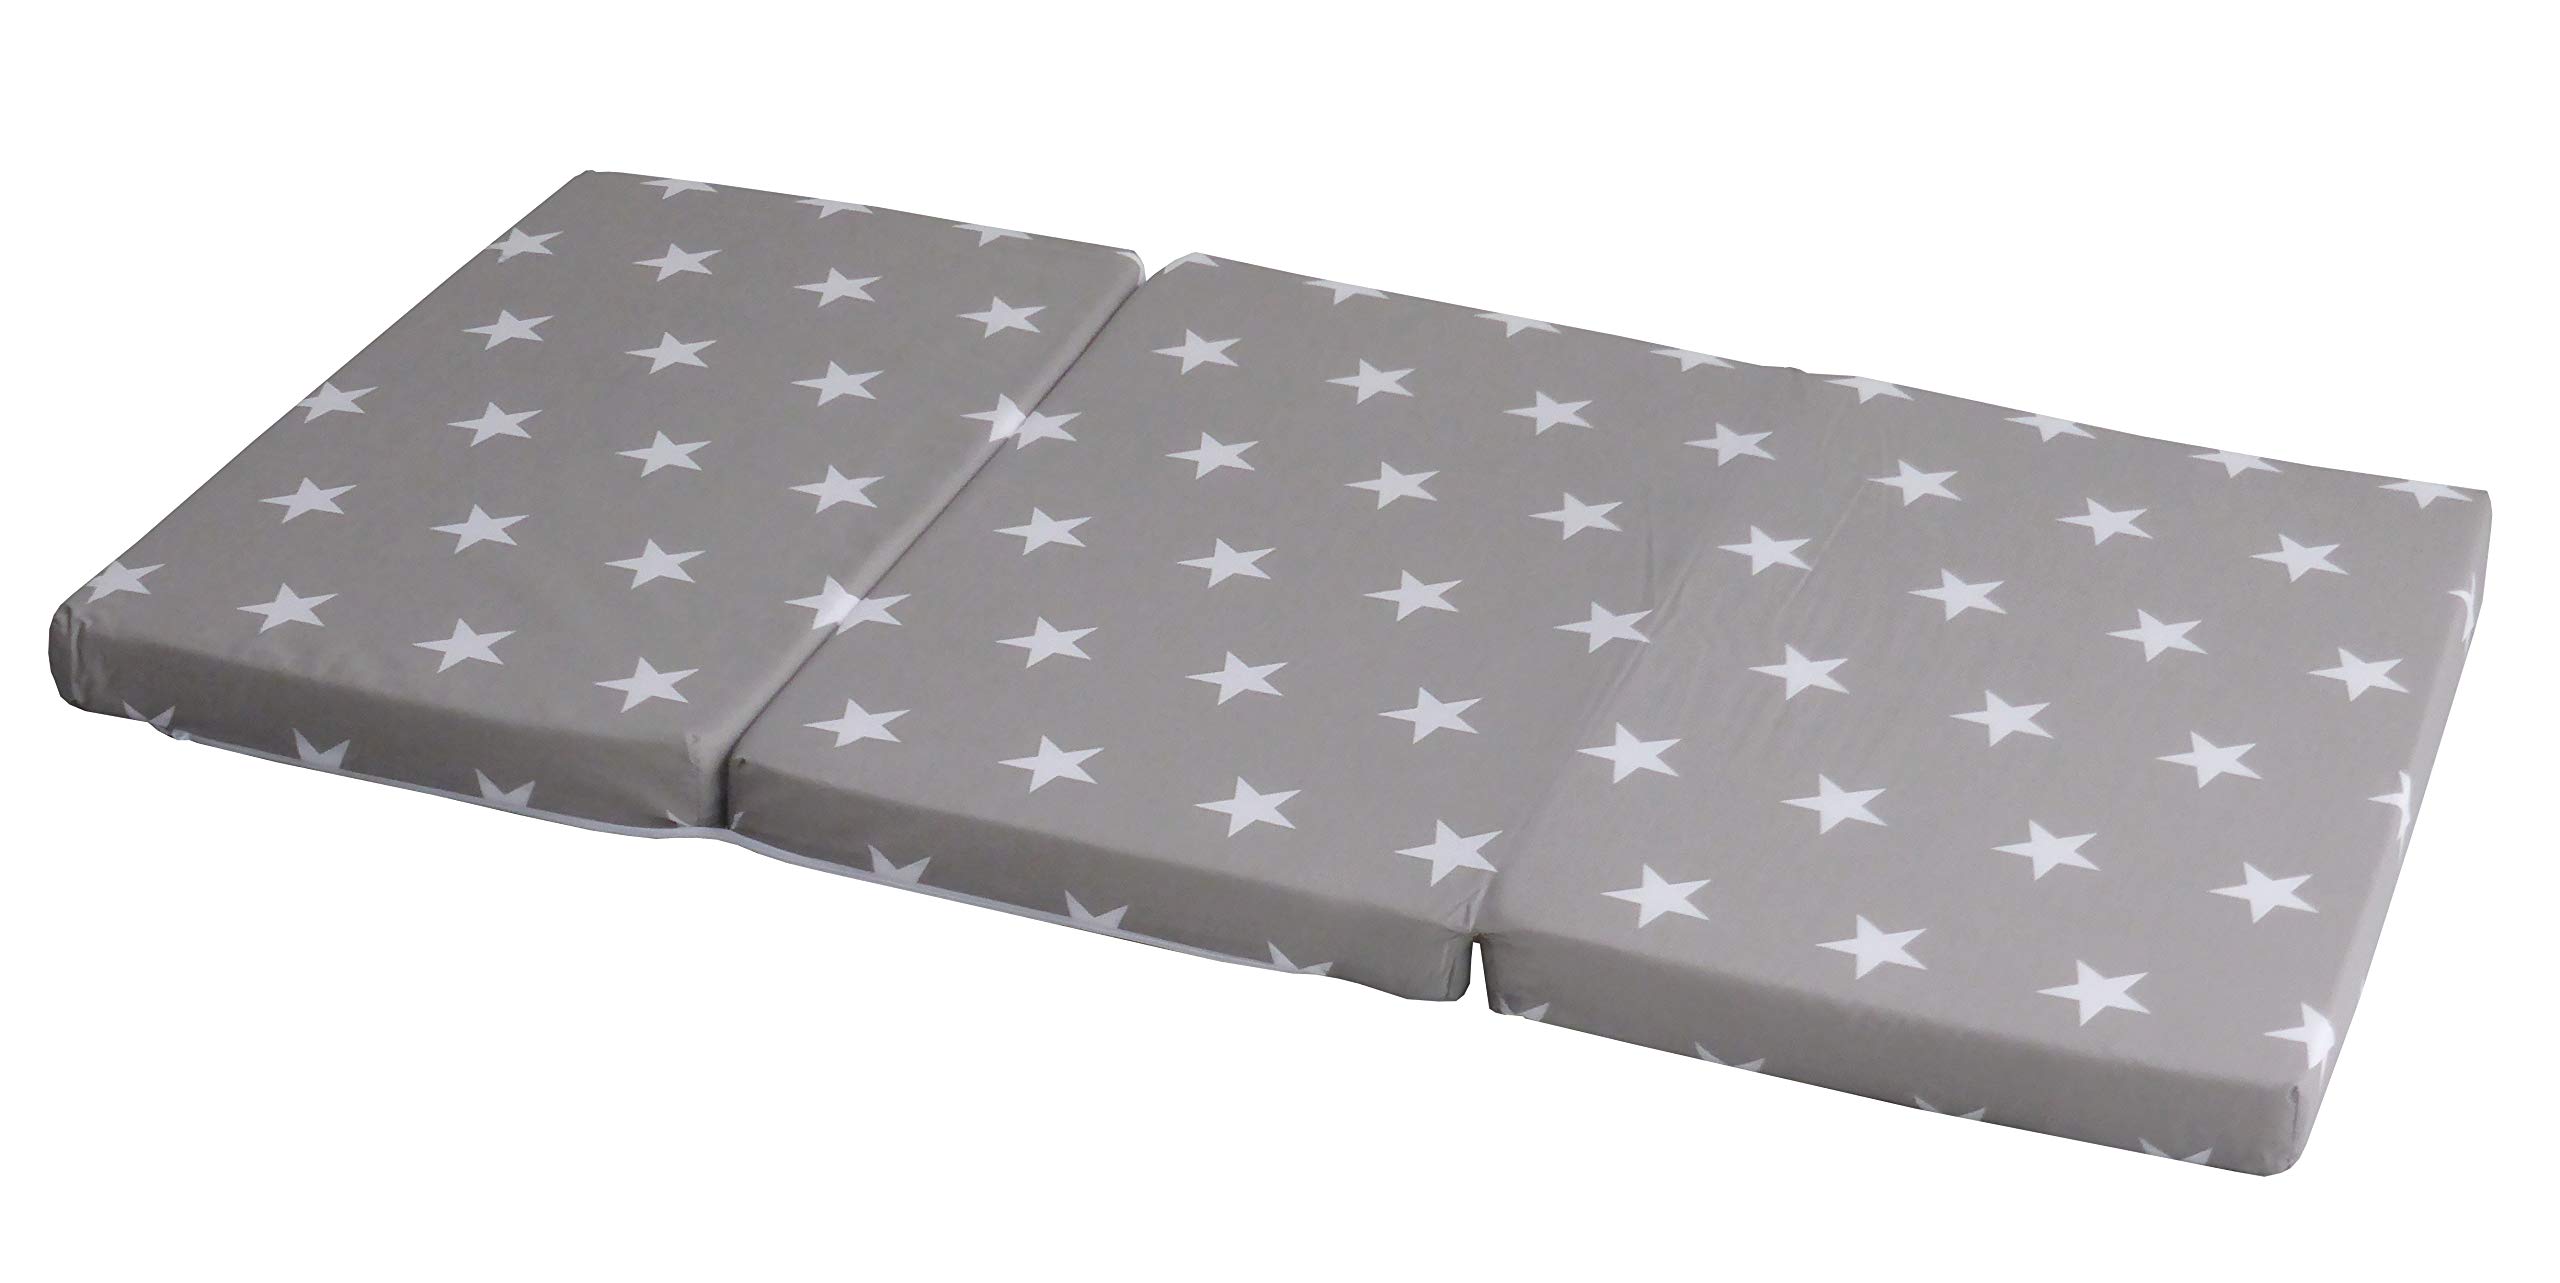 roba Reisebettmatratze Little Stars - Faltbare Baby Matratze für Reisebett 60 x 120 cm - Abnehmbarer Bezug in Grau mit weißen Sternen - Inklusive Tragetasche